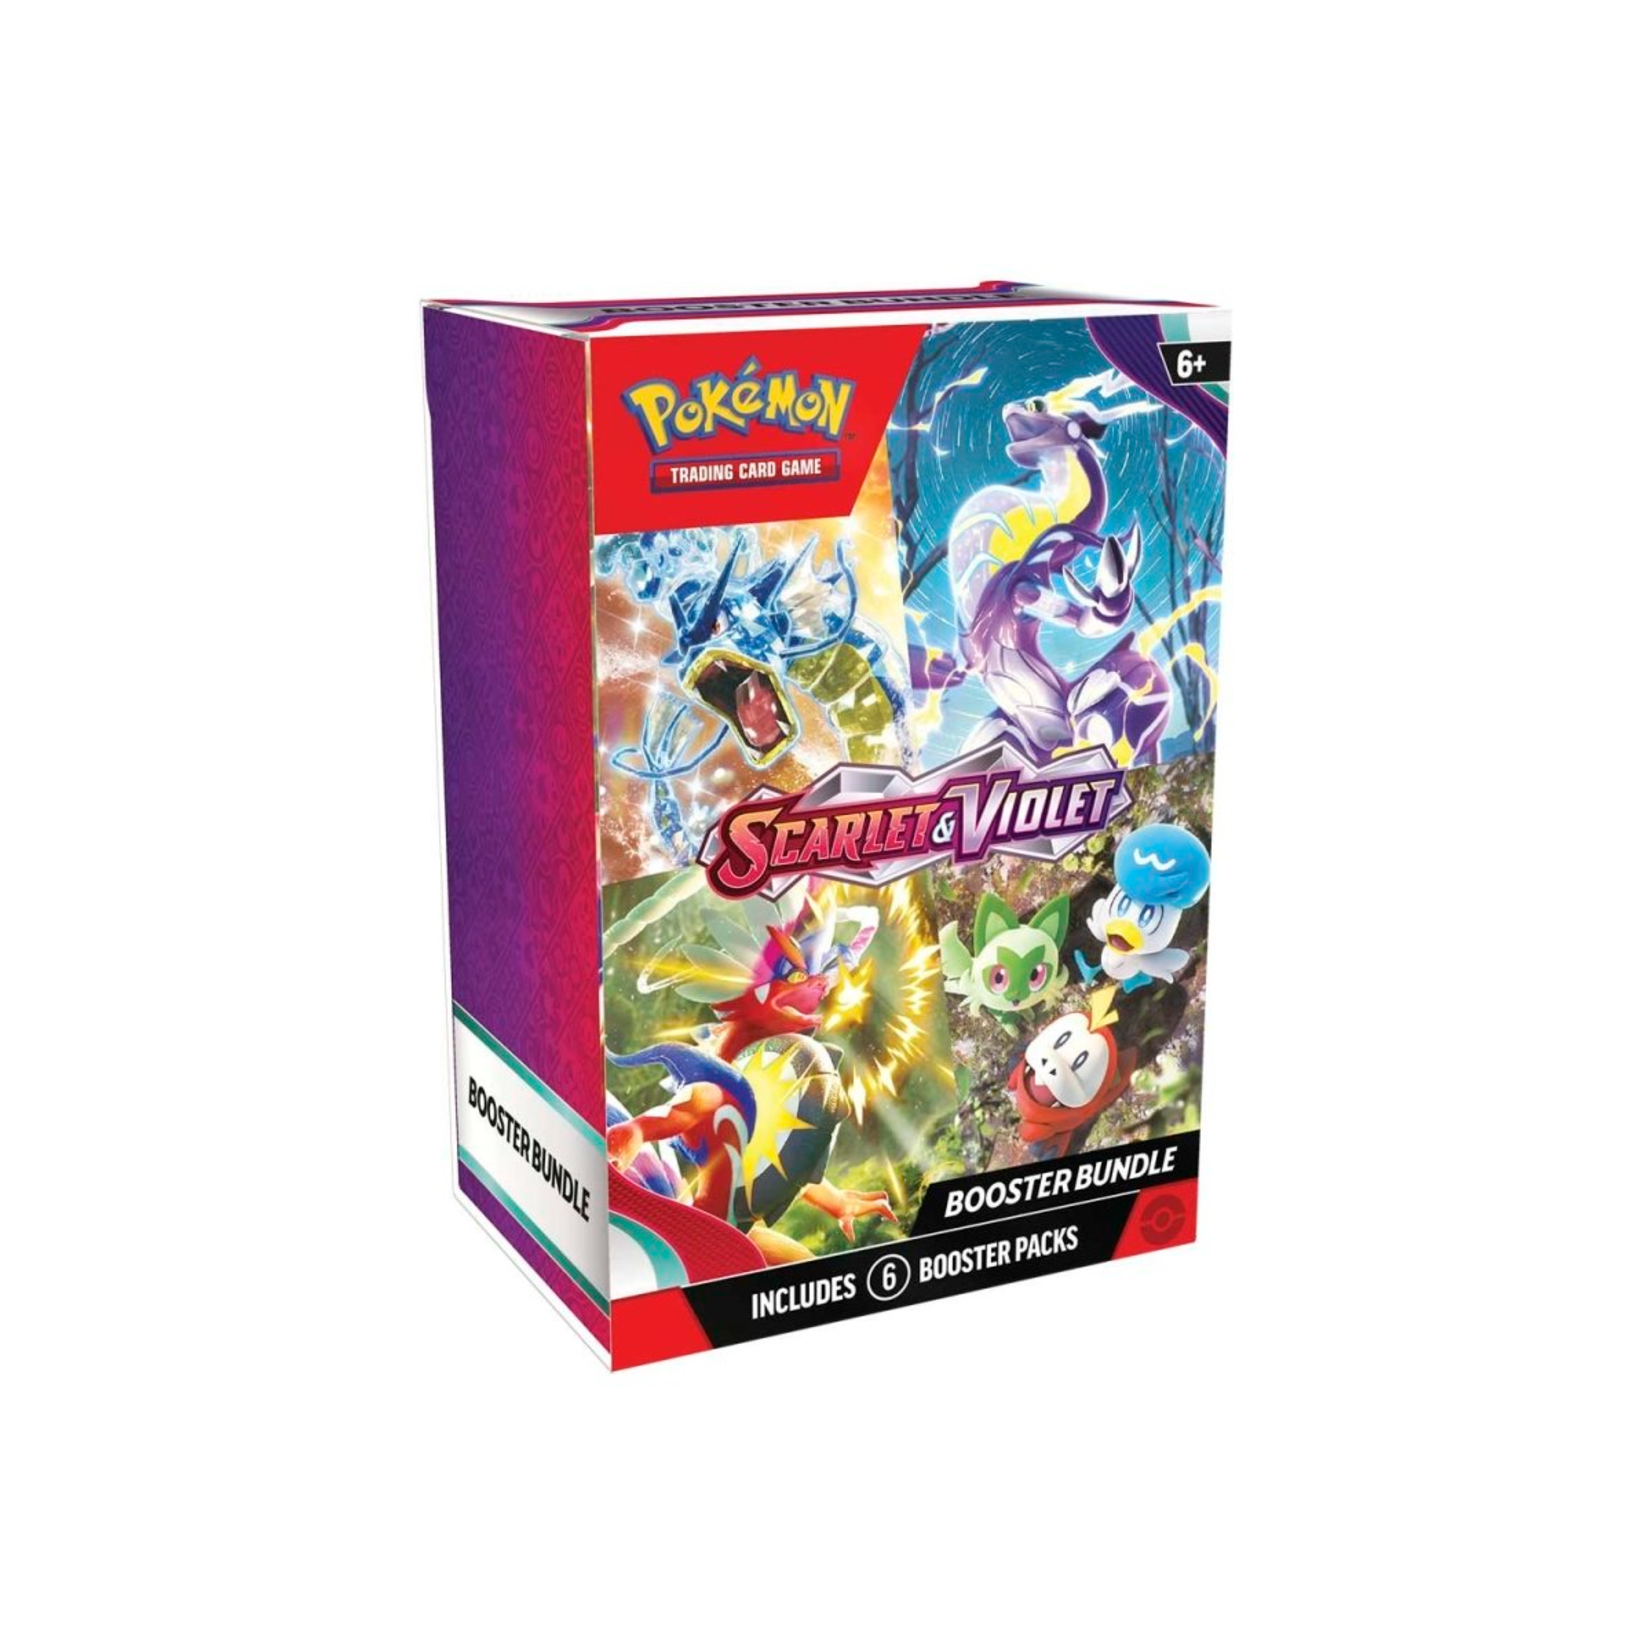 Pokémon Pokémon TCG: Scarlet & Violet Booster Bundle (6 Packs)